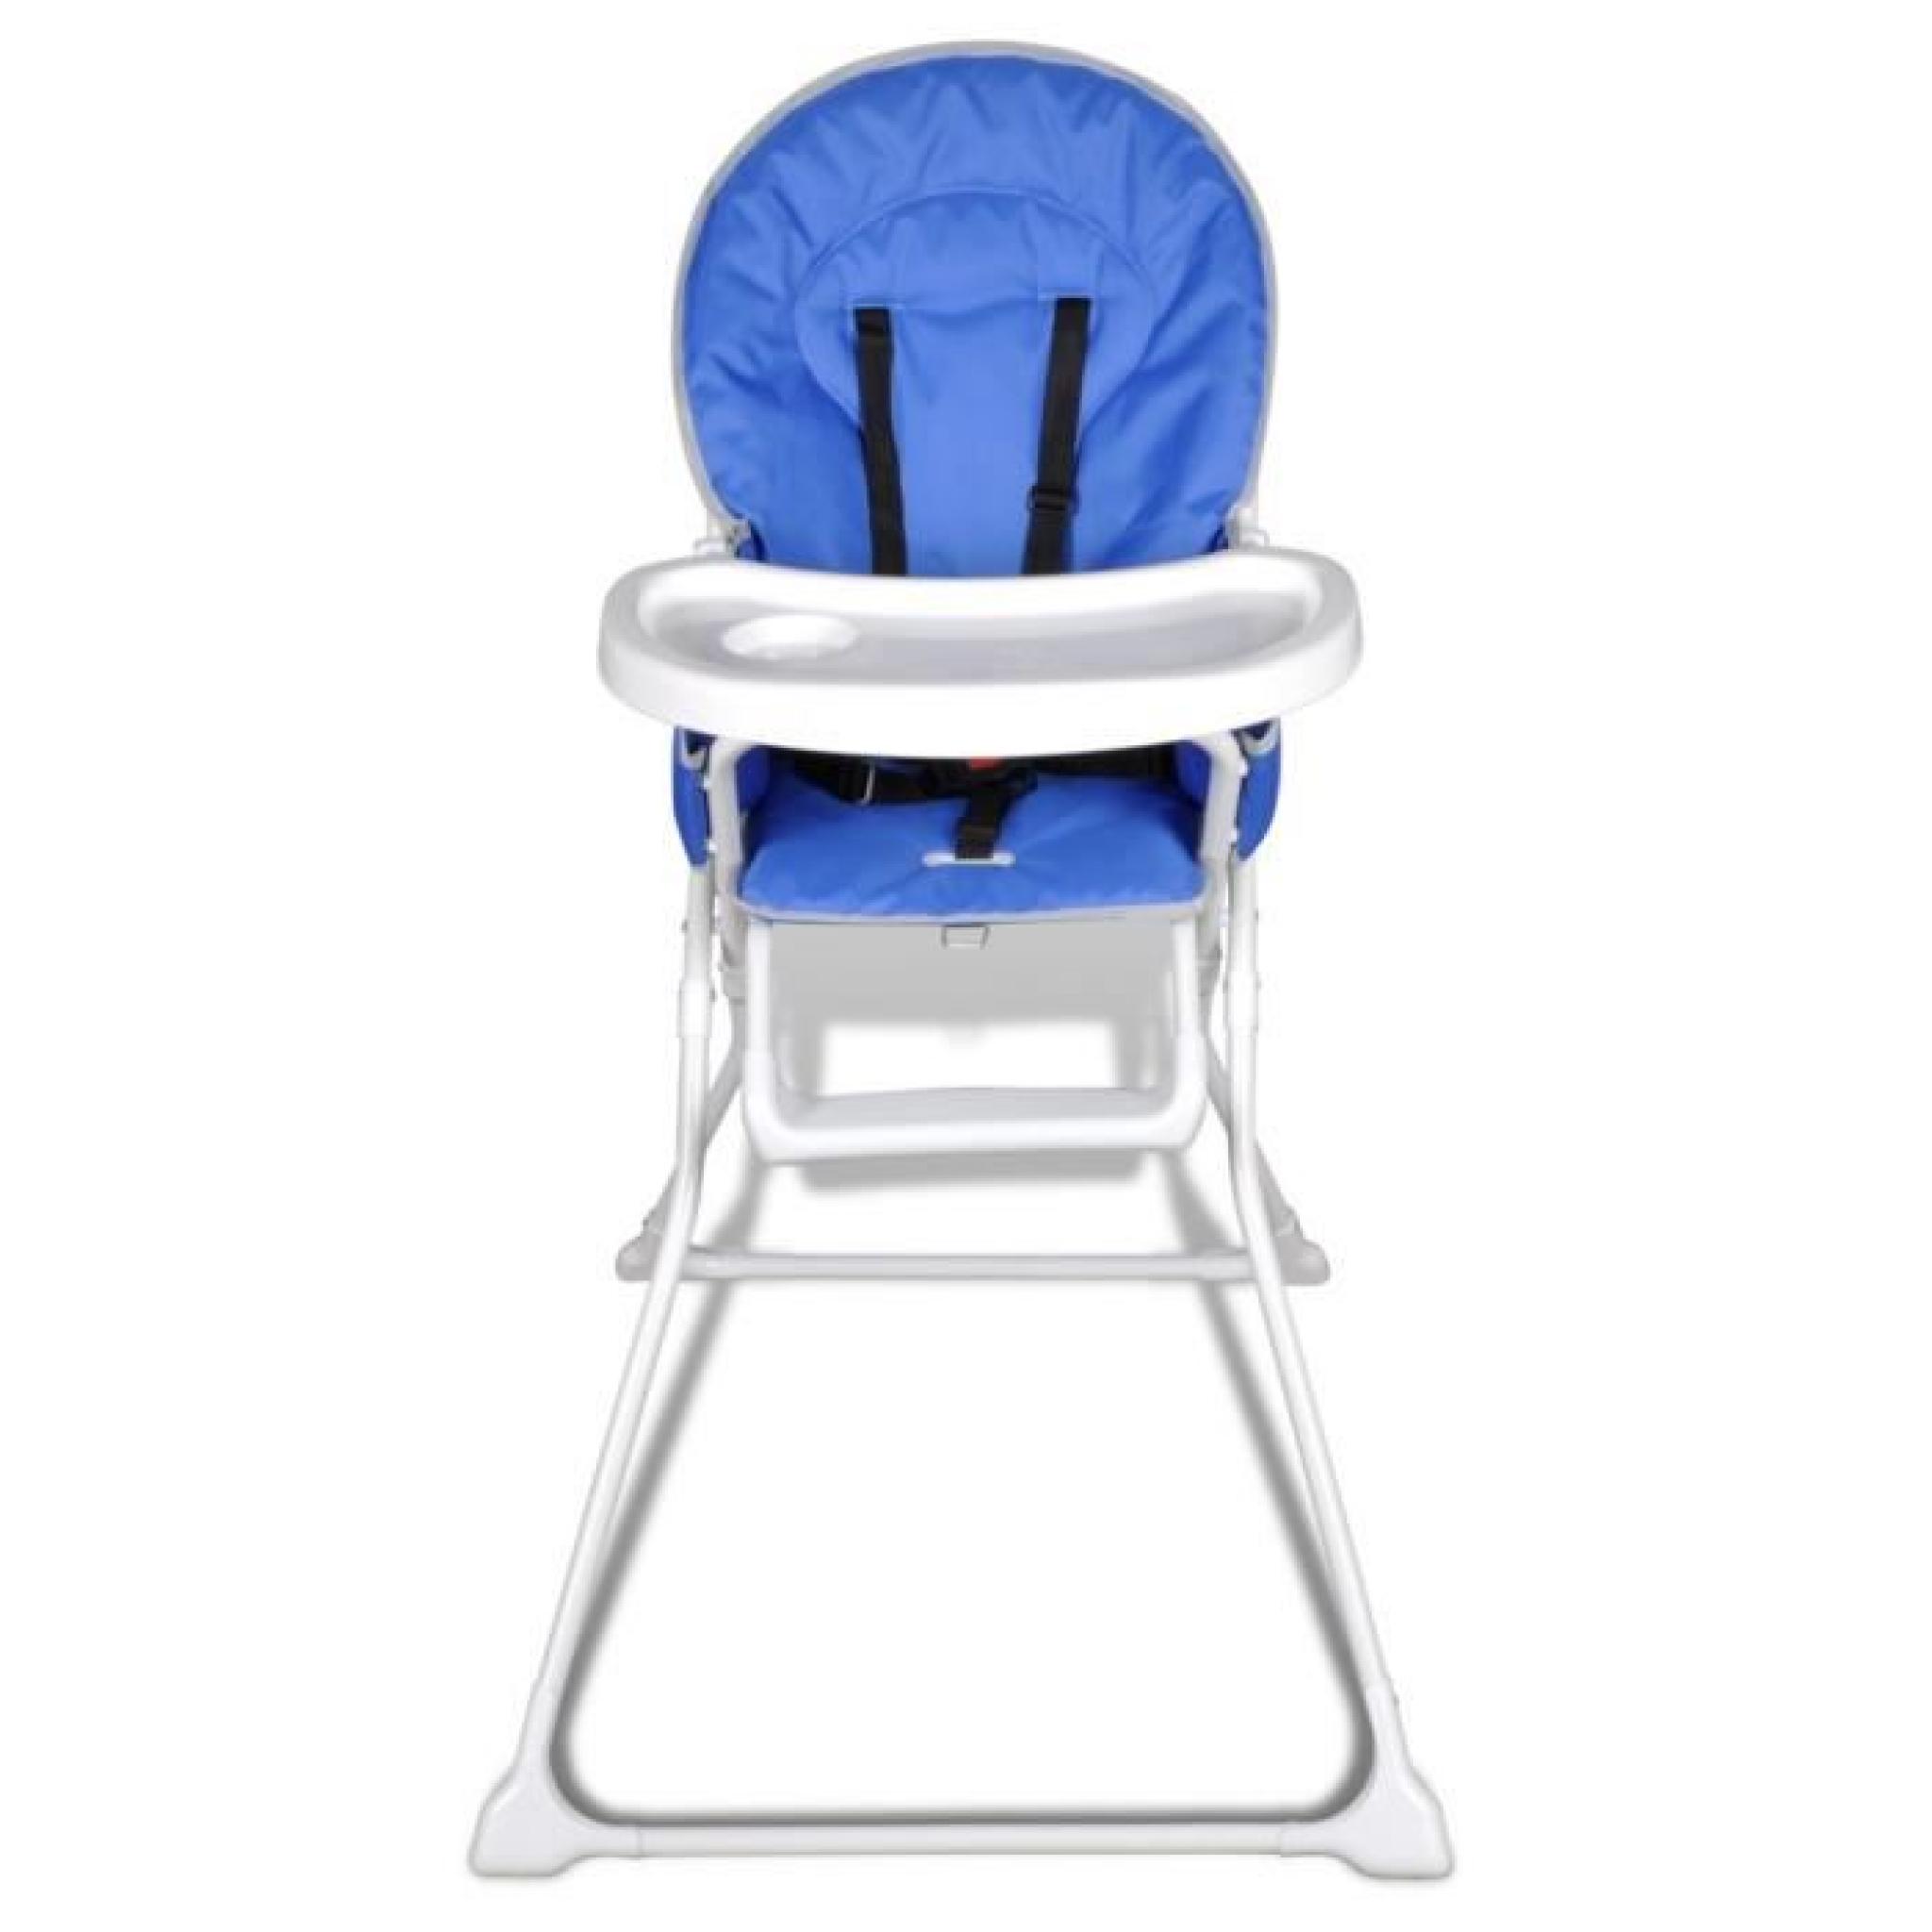 Magnifique Chaise haute de bebe bleue